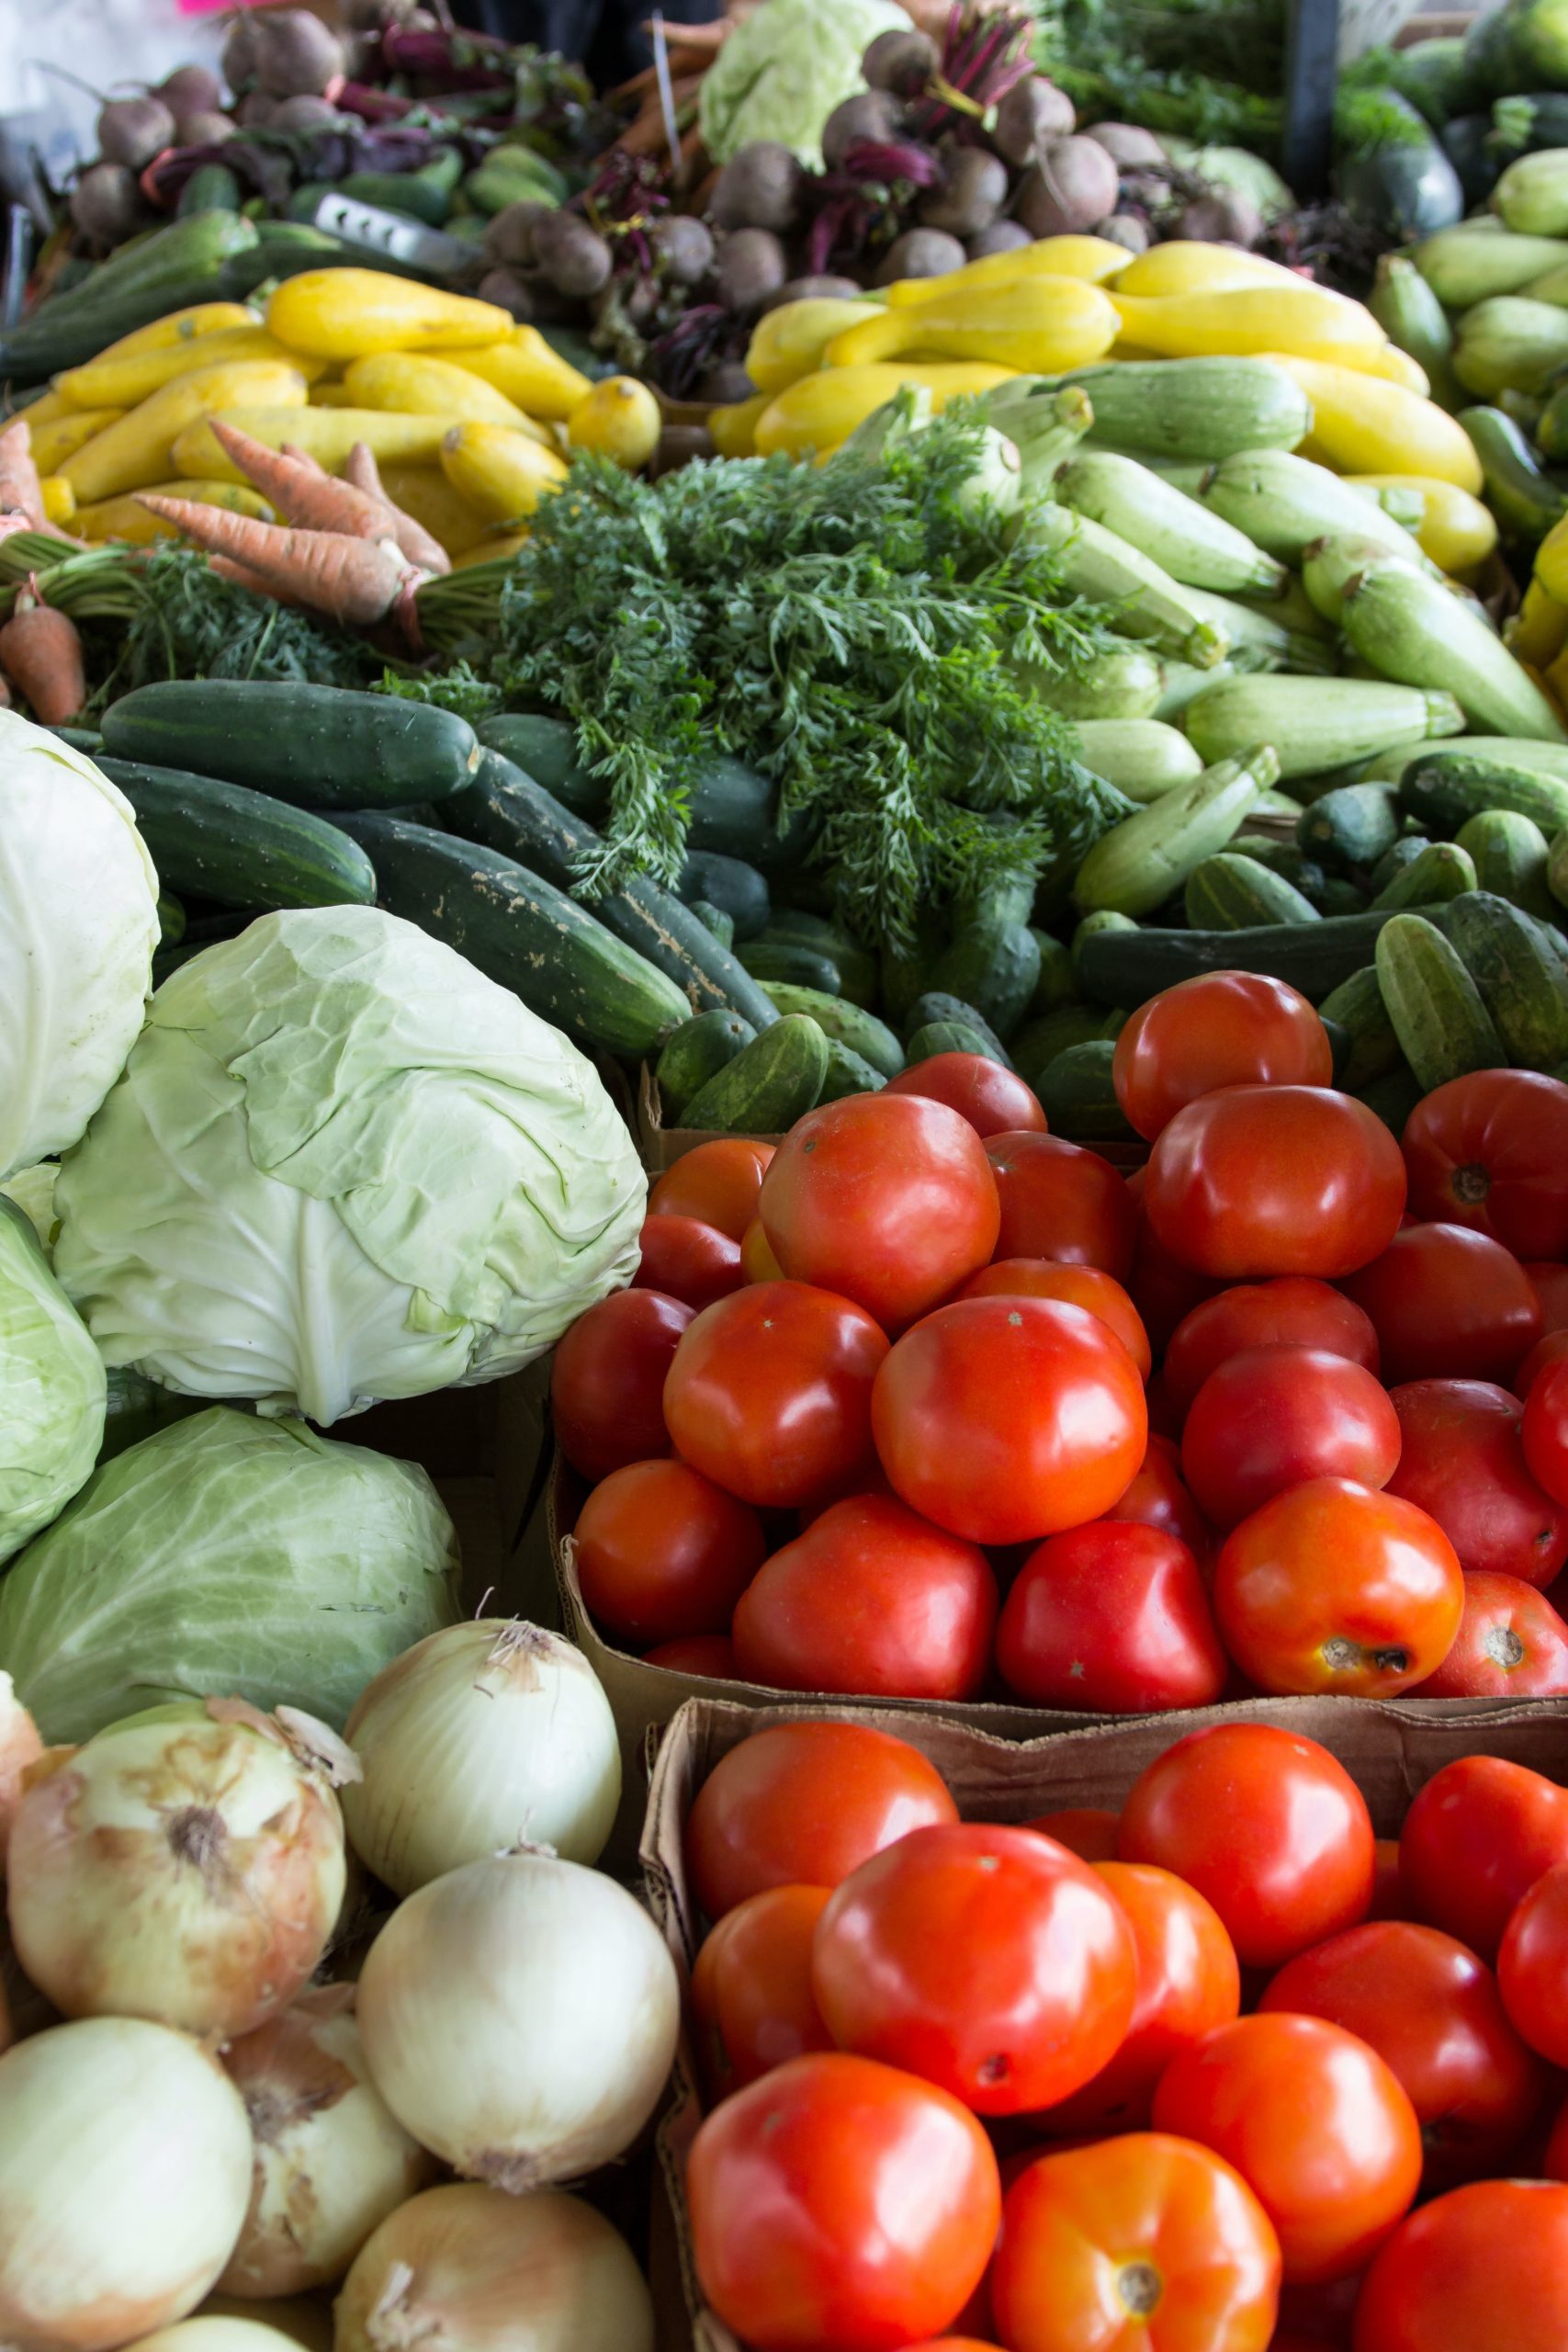 An assortment of vegetables